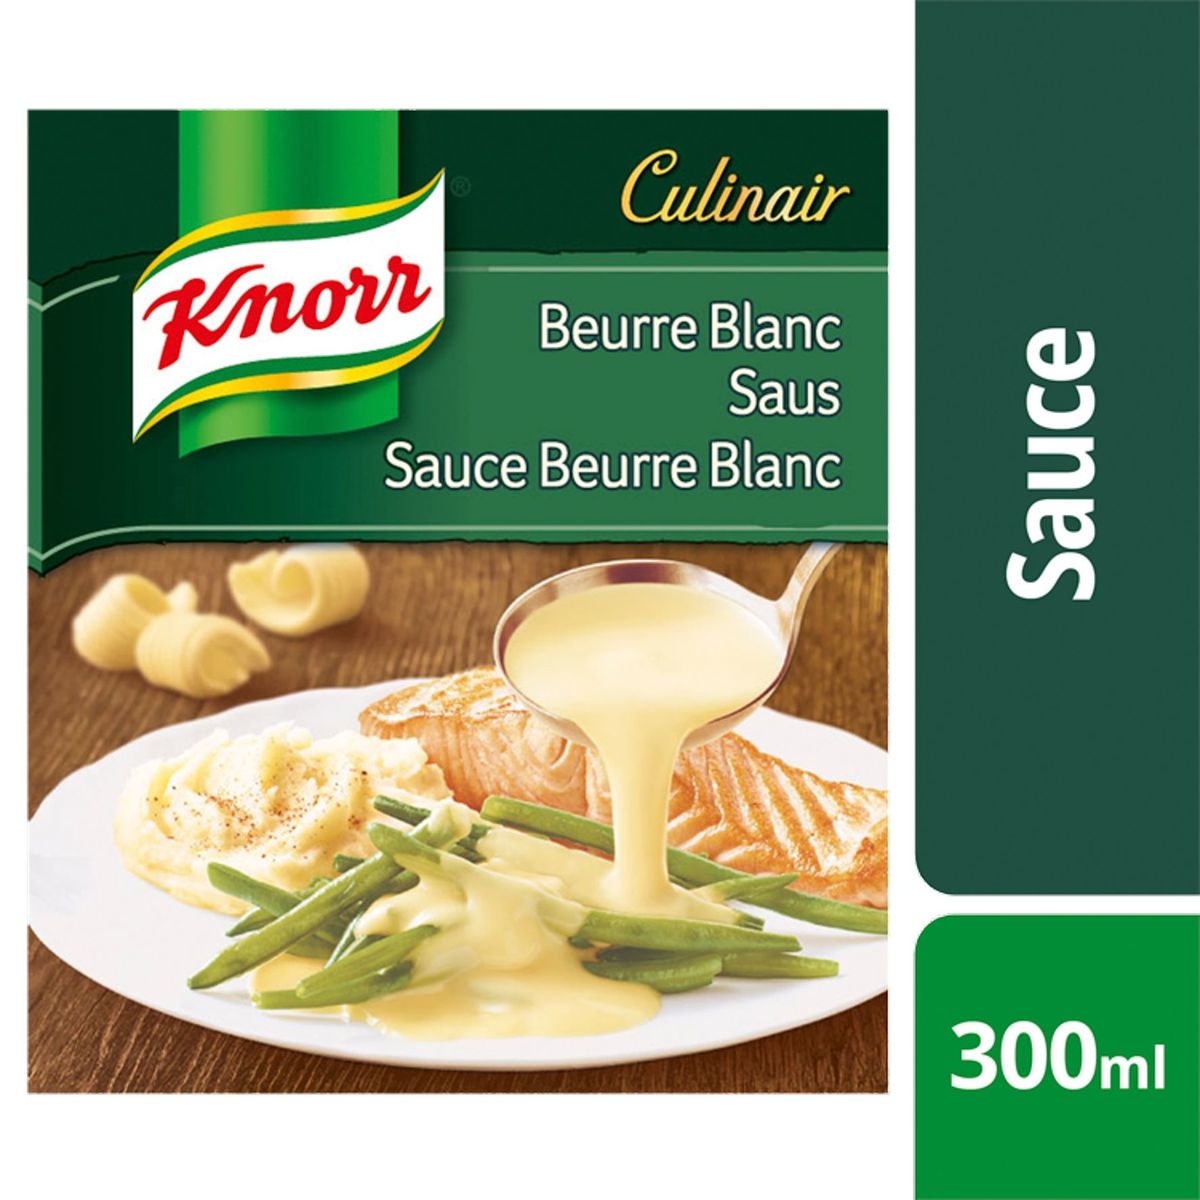 Knorr Saus Beurre Blanc Saus 300 ml